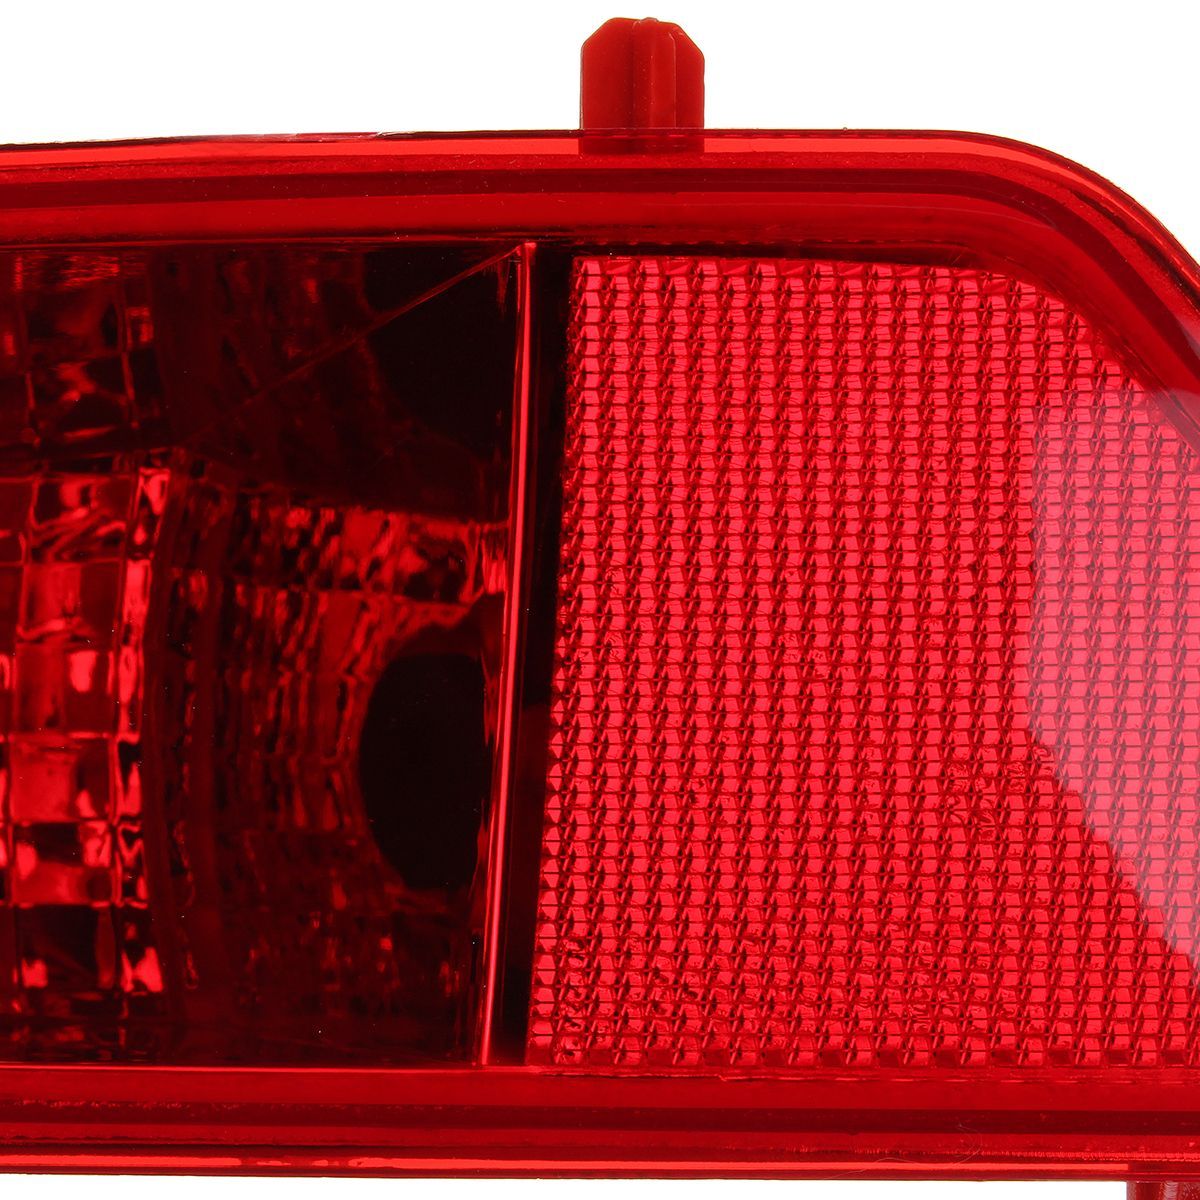 Pair-Rear-Bumper-Fog-Light-Lamp-Cover-Red-Left-Right-for-PEUGEOT-3008-2009-2015-1397546